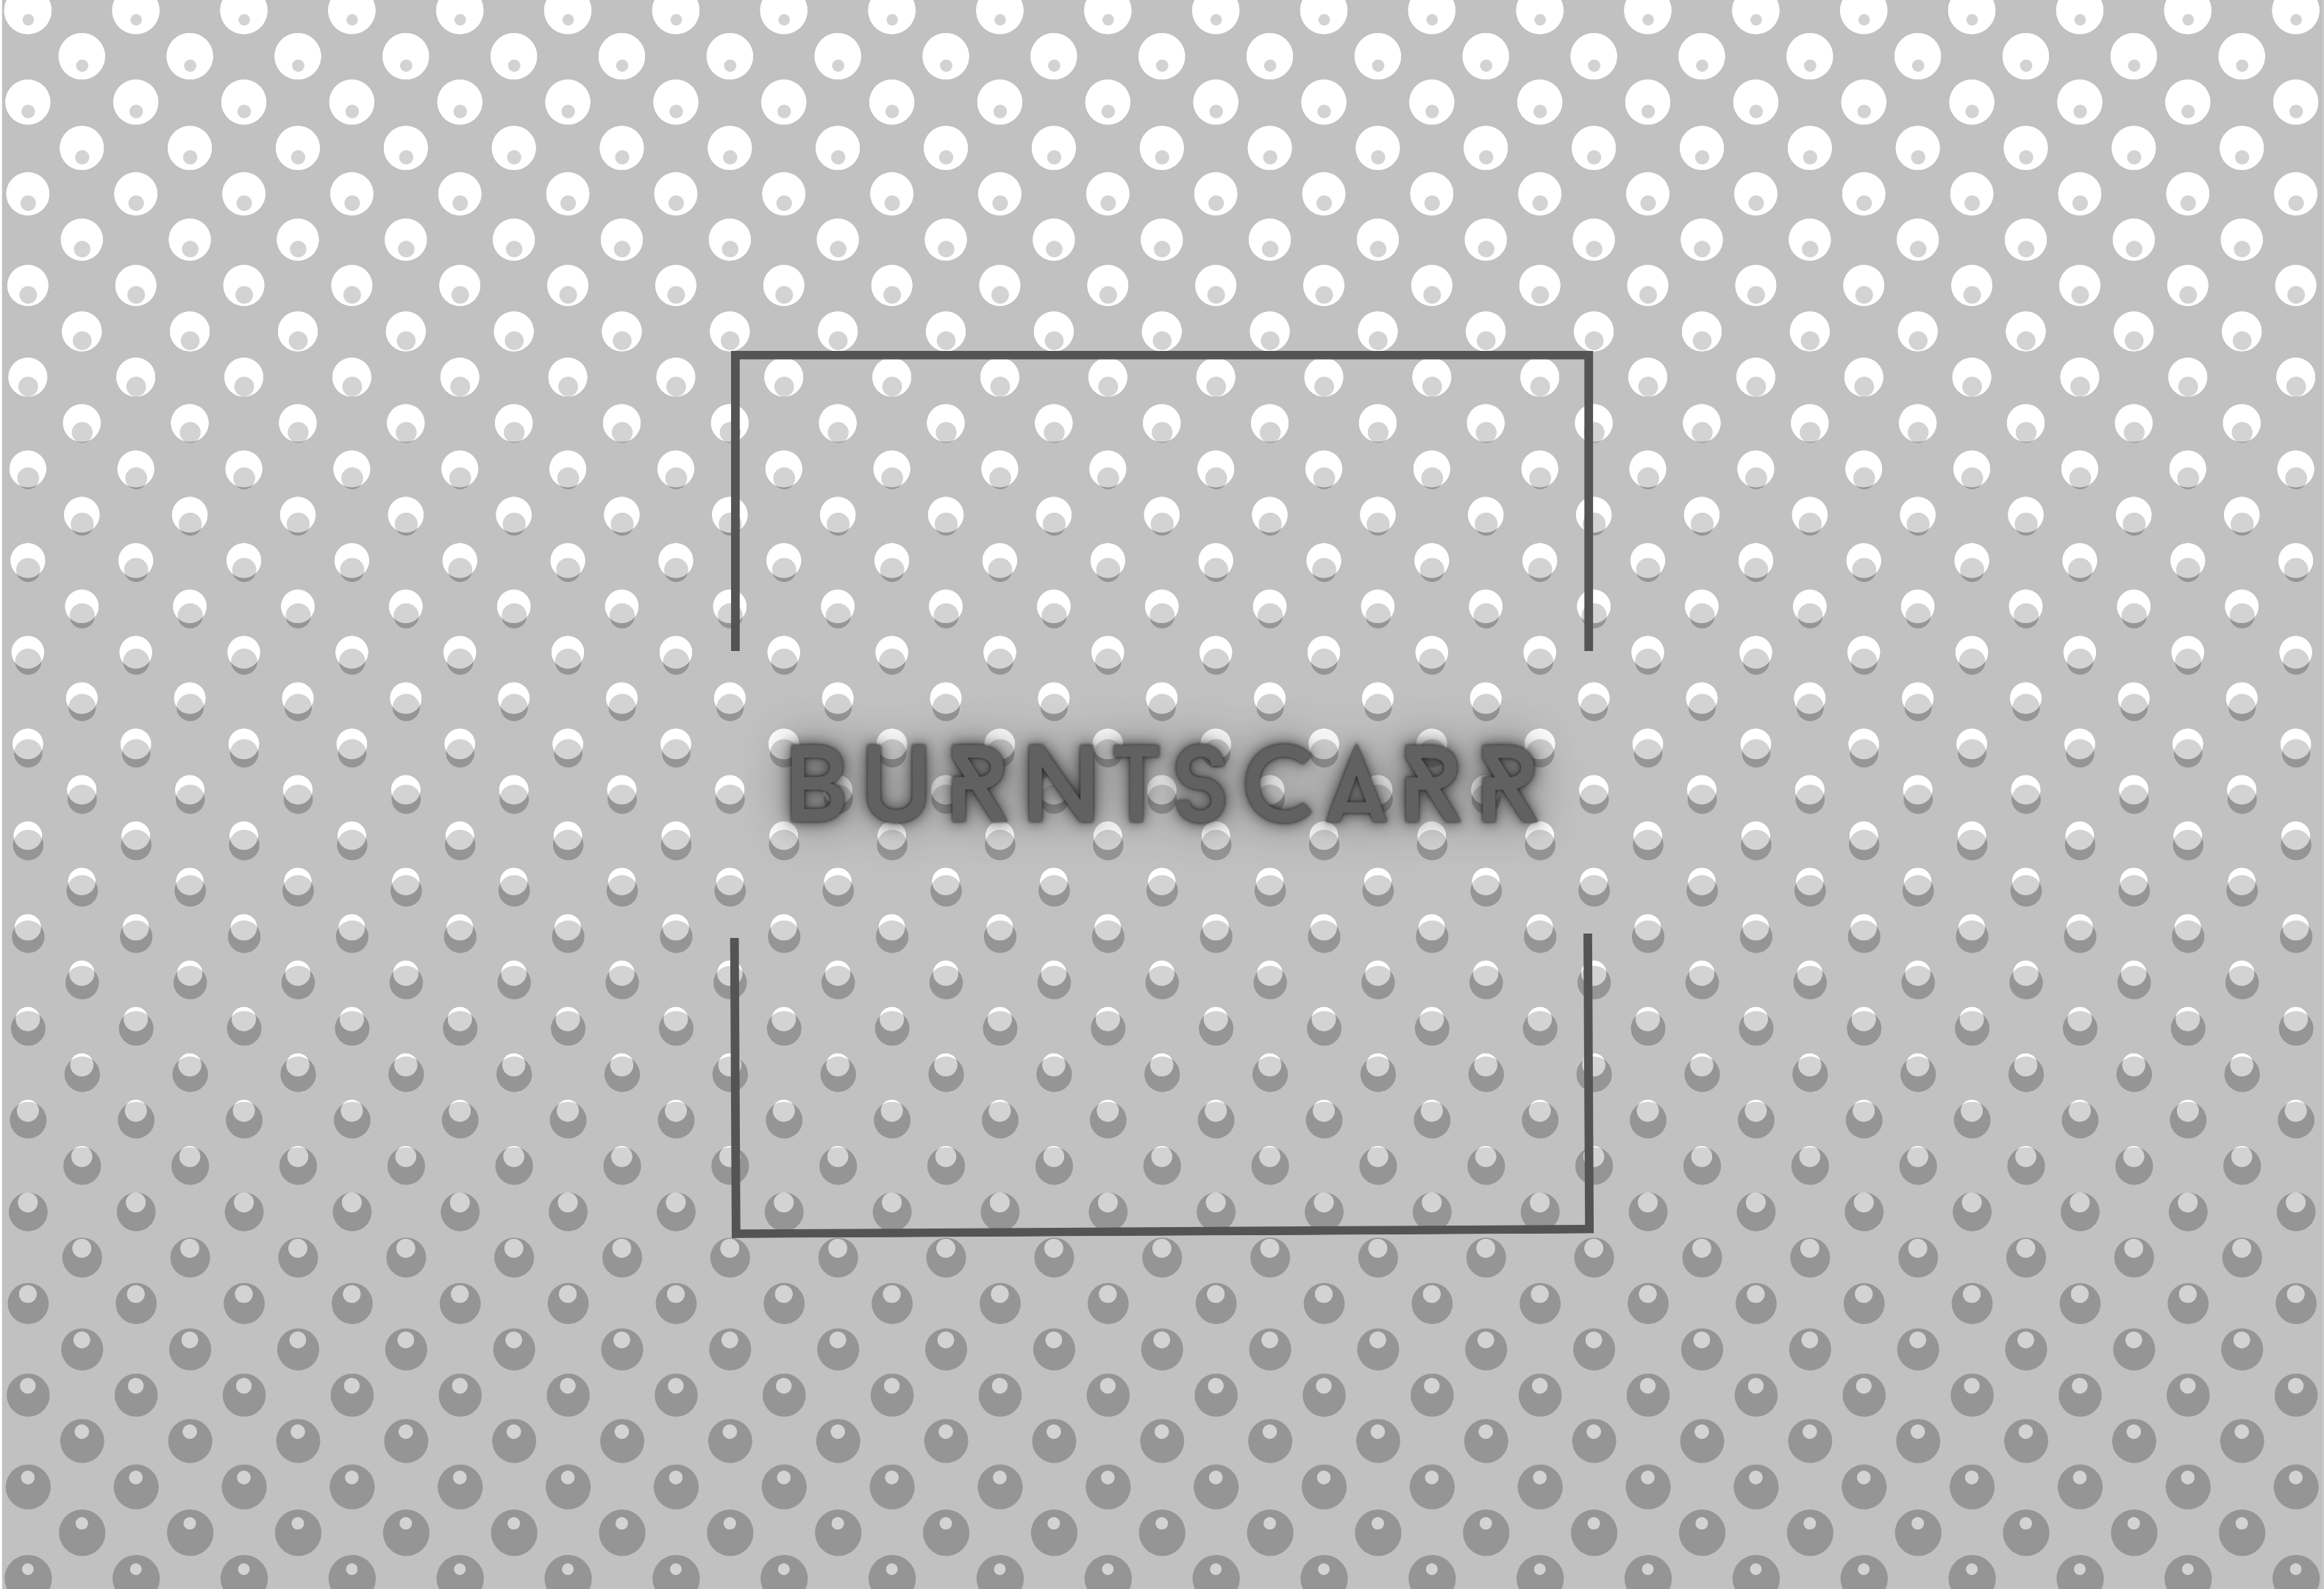 burntscarr - Holy (Original Demo Idea)